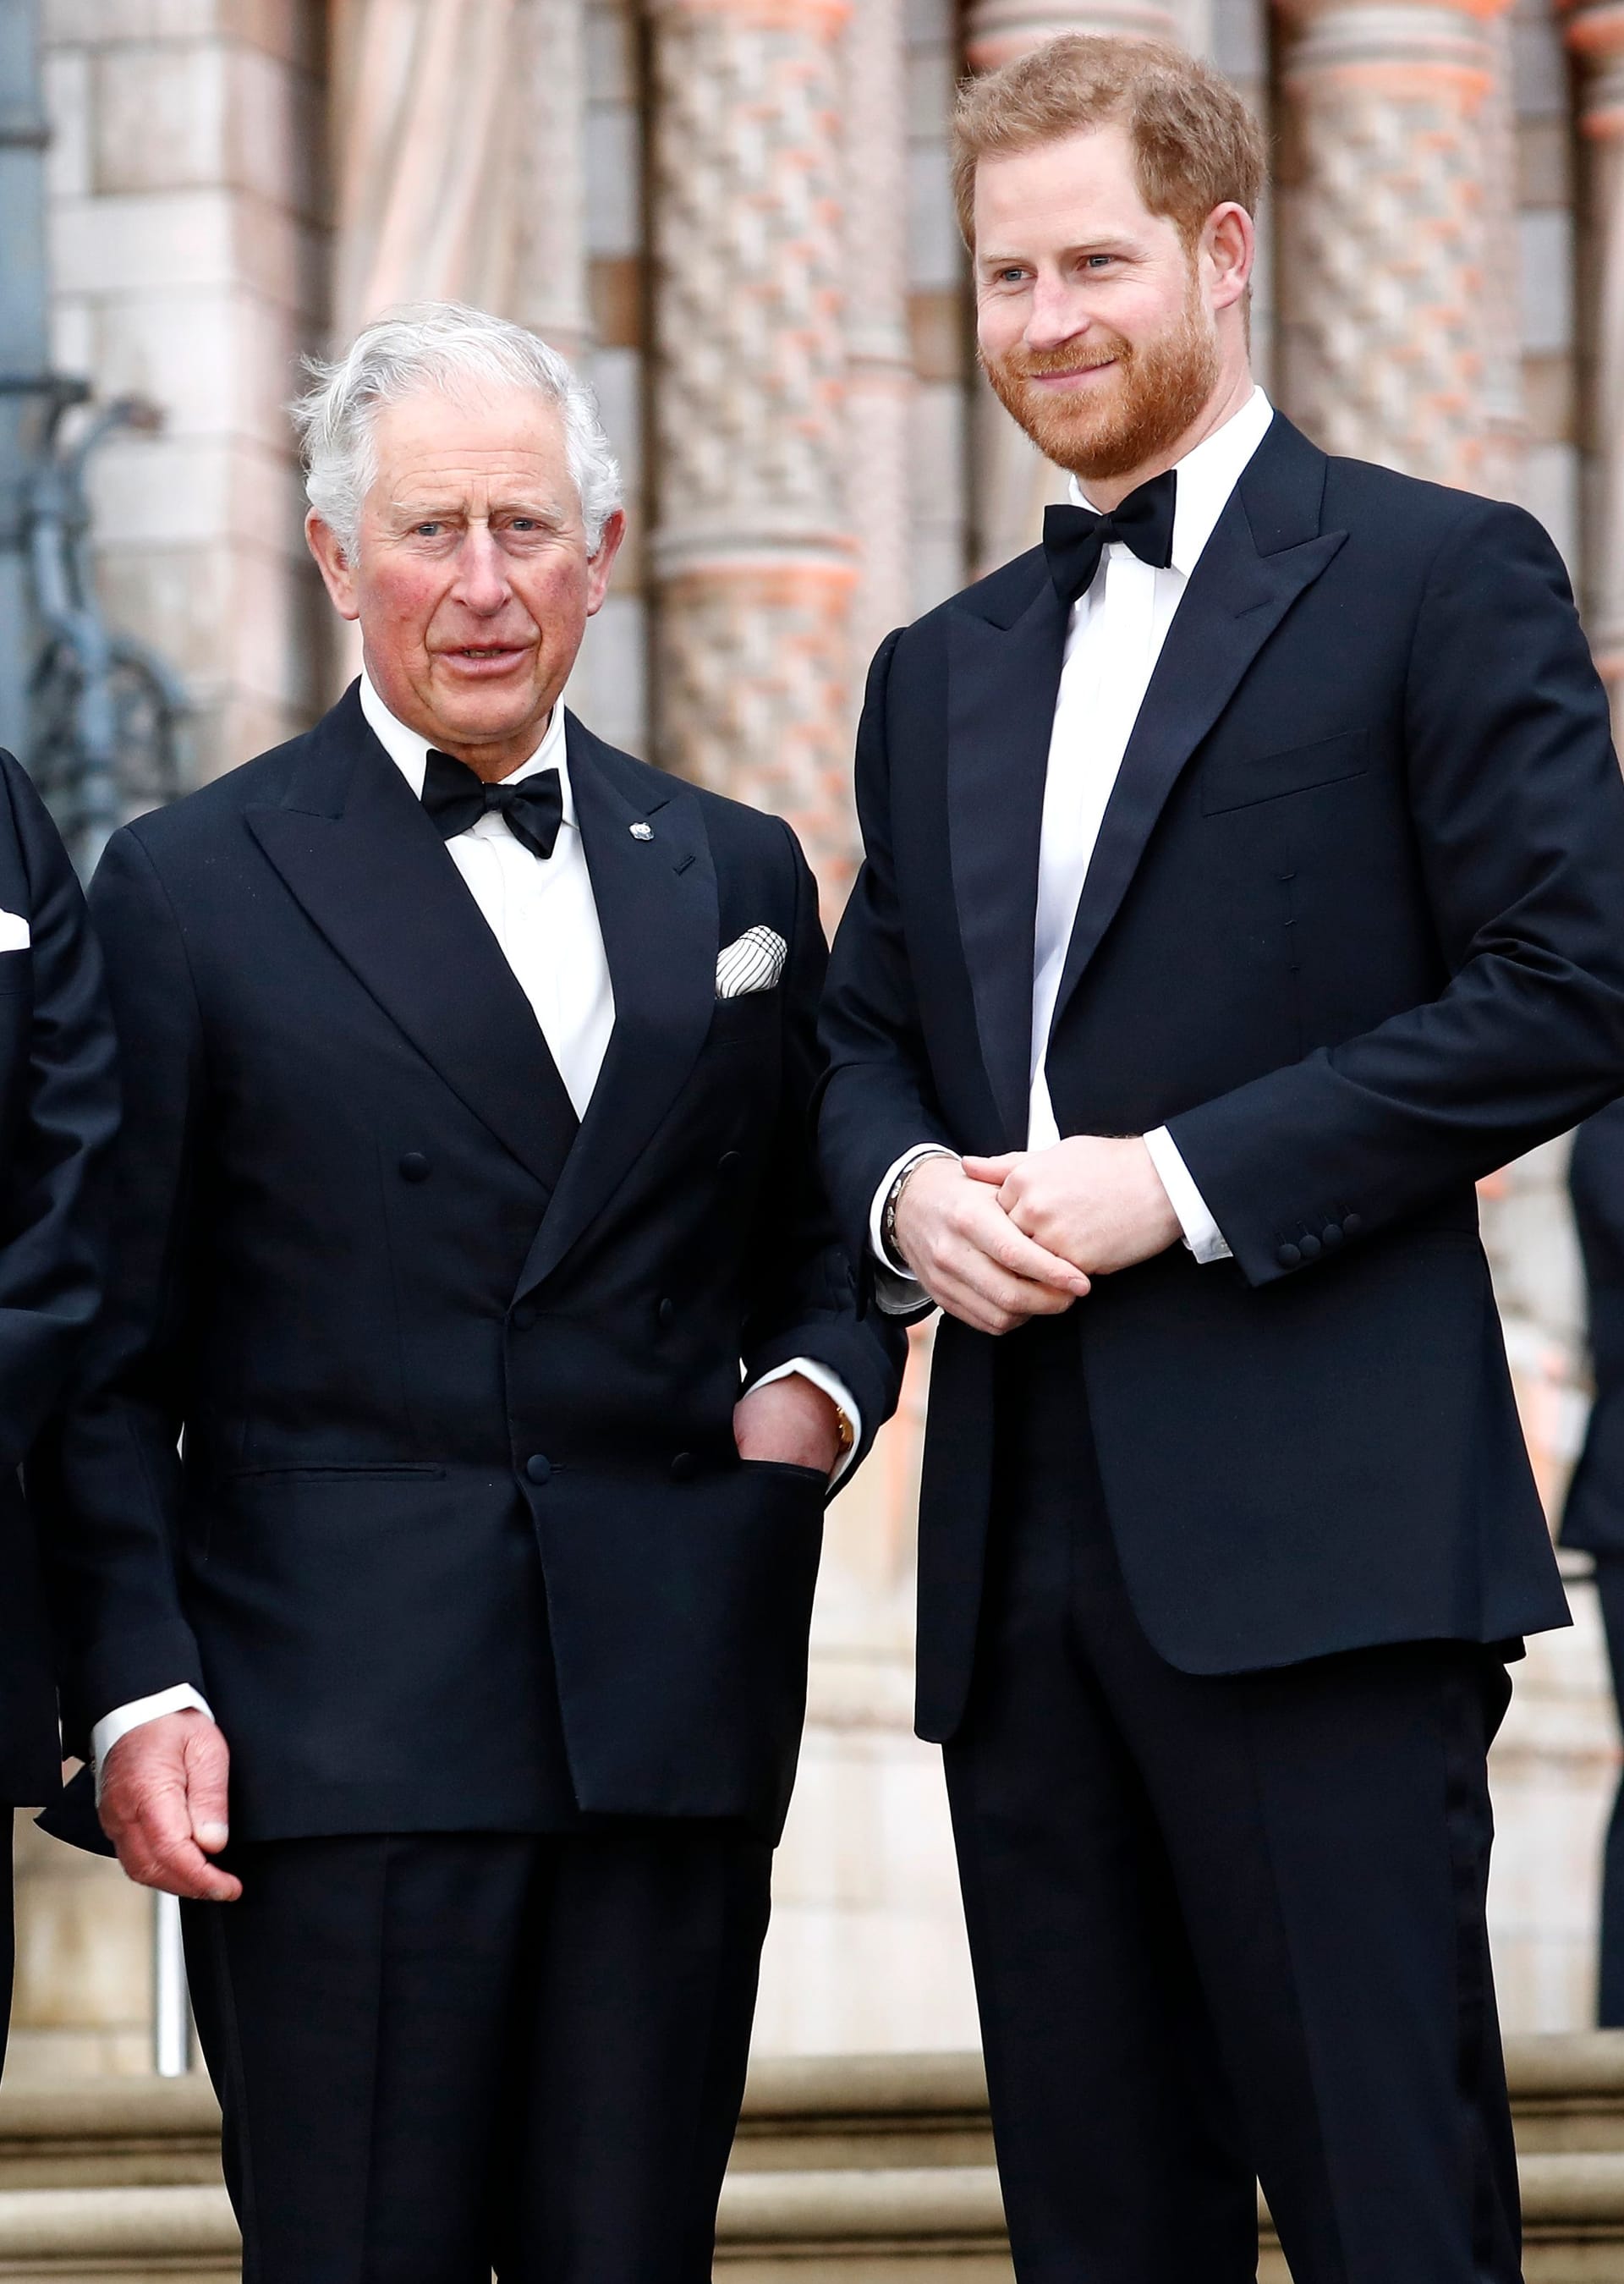 April 2019: Der damalige Prinz Charles mit seinem jüngeren Sohn Prinz Harry – hier herrschte offenbar noch mehr Harmonie innerhalb der Royal Family.